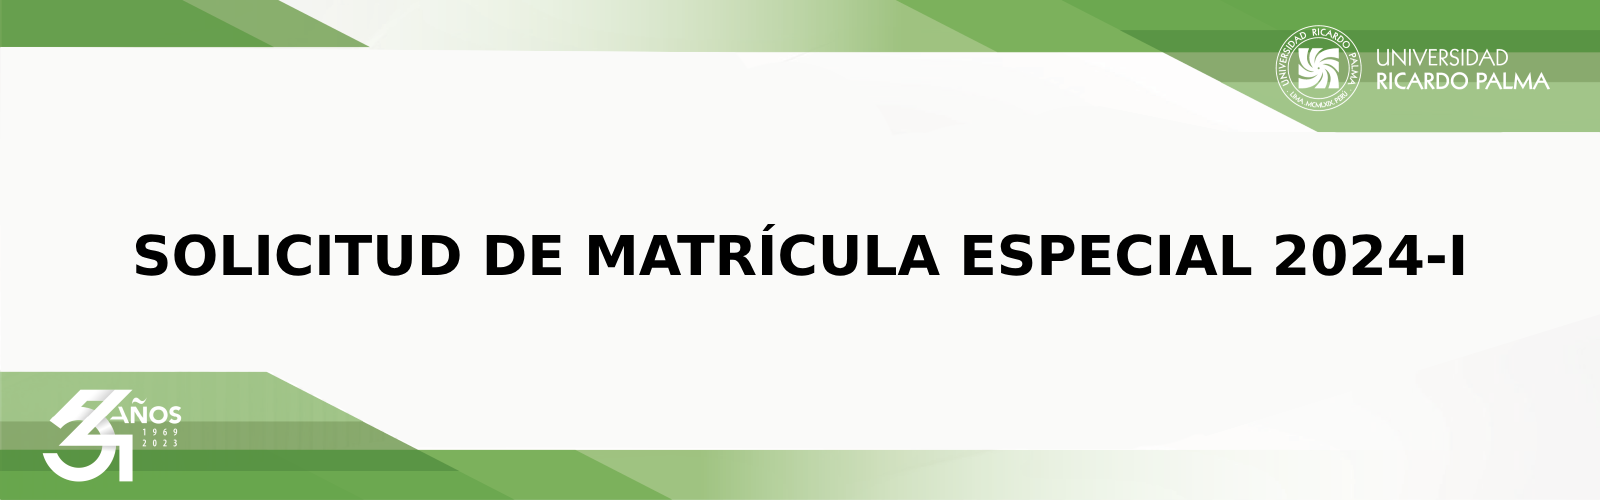 SOLICITUD DE MATRÍCULA ESPECIAL 2024-I